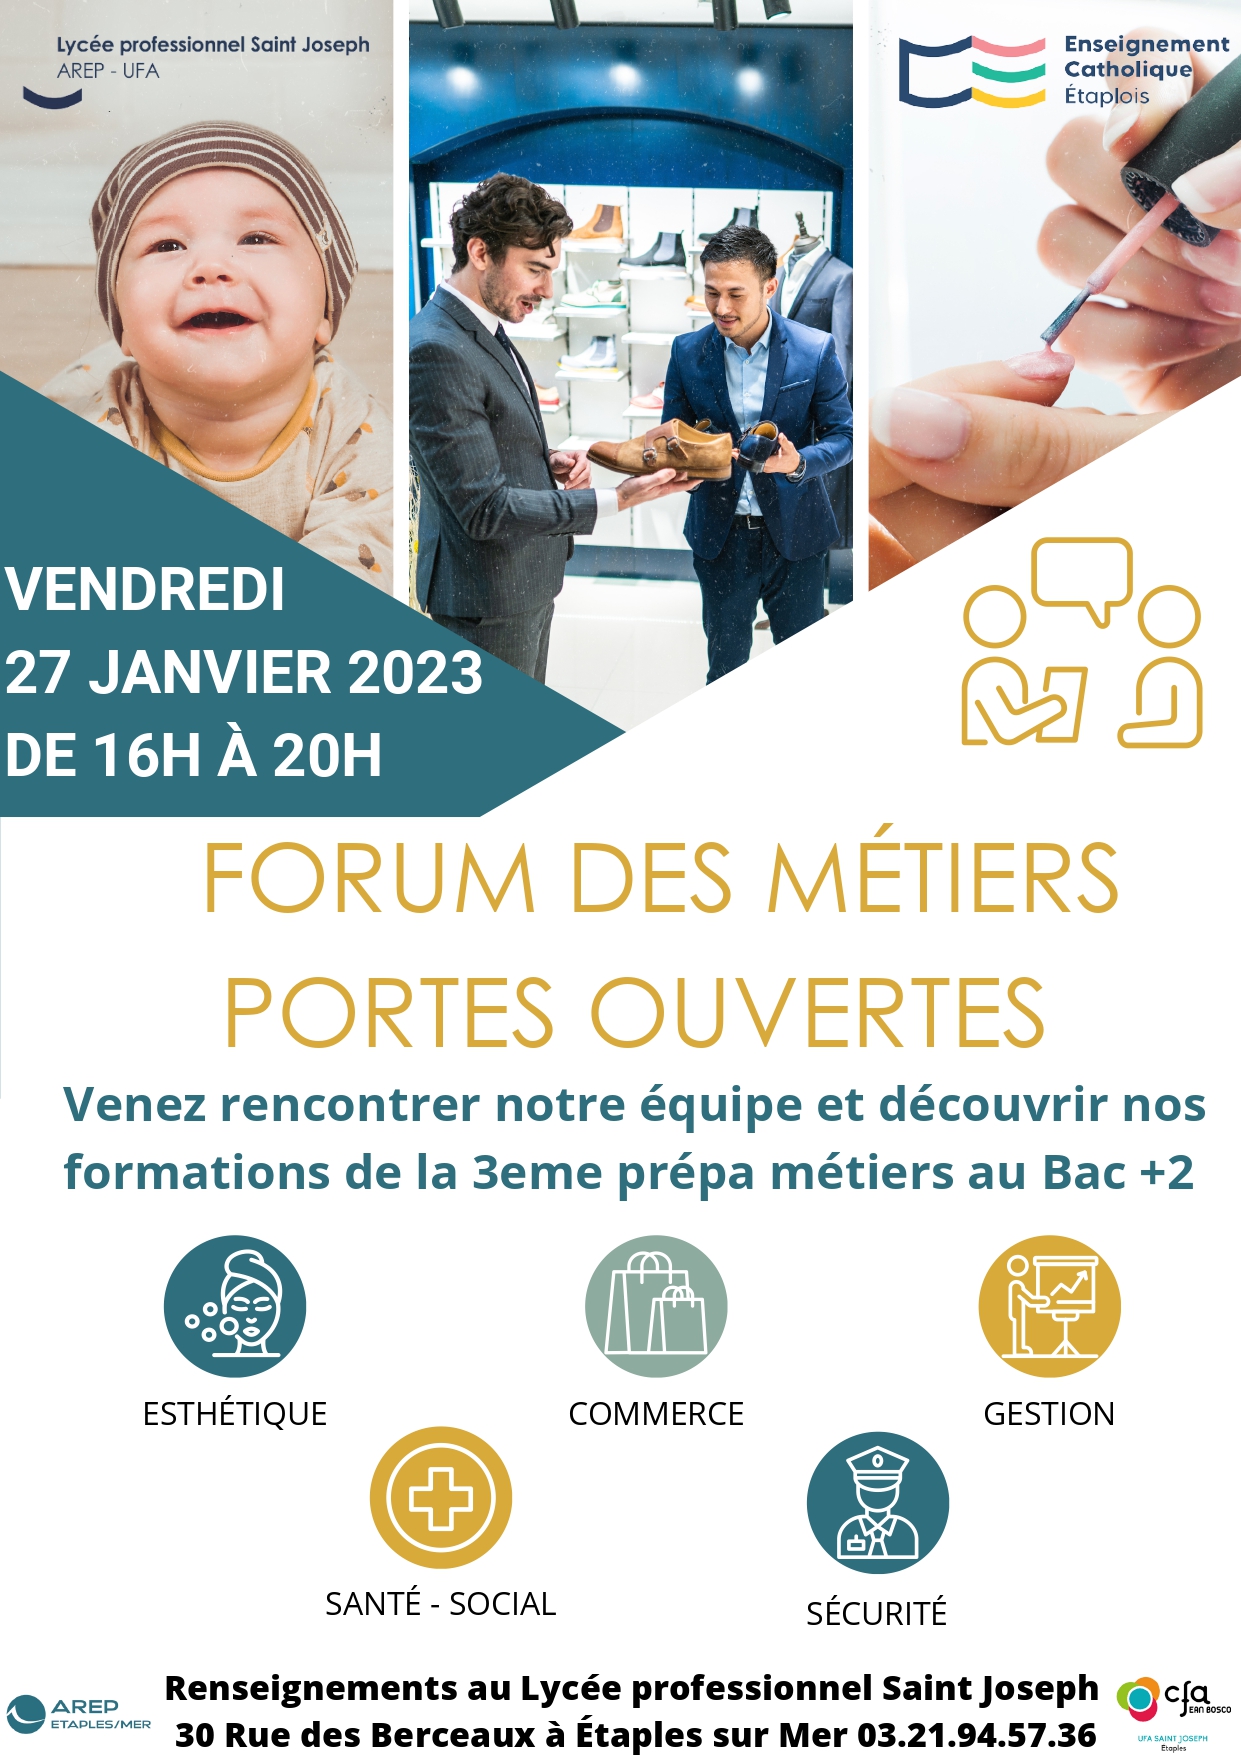 You are currently viewing Forum des métiers et portes ouvertes du 27 janvier